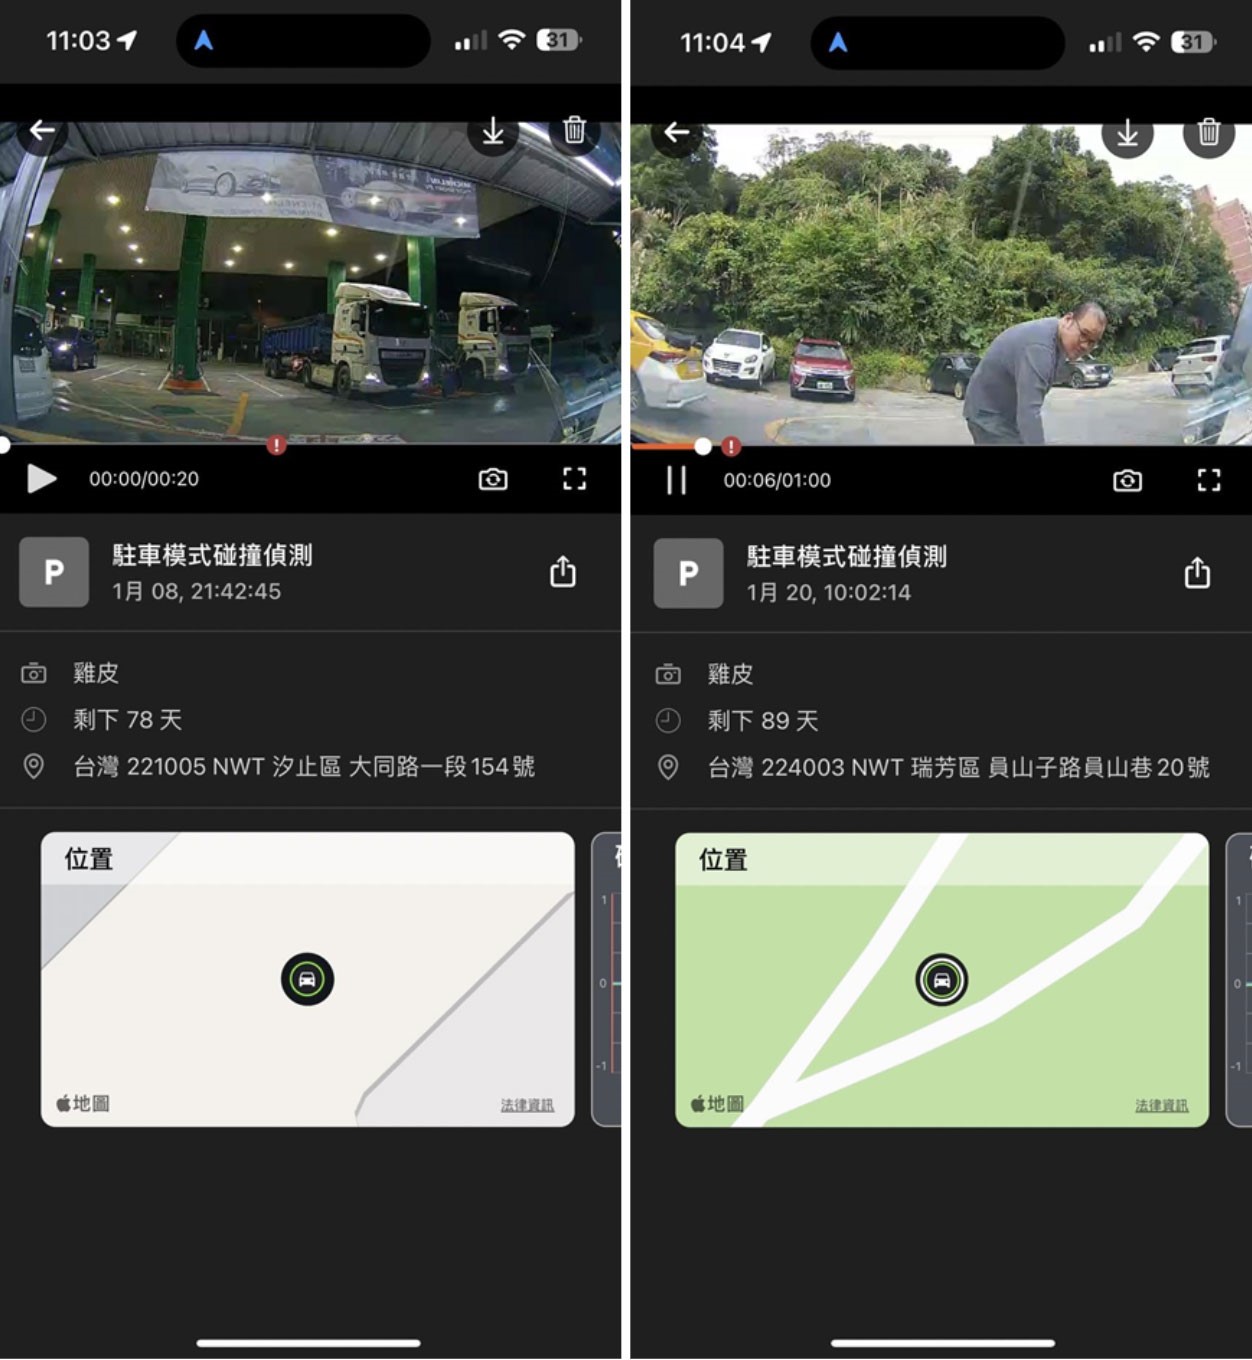 在事件通知方面，MioNext App 提供手機 App 推事件即時通報功能，當行車記錄器偵測到碰撞、入侵緊急事件時，立即通知使用者。這讓車主能夠即刻知曉車輛的安全狀態，有助於快速應對突發狀況。（圖片來源：網友姜浩）